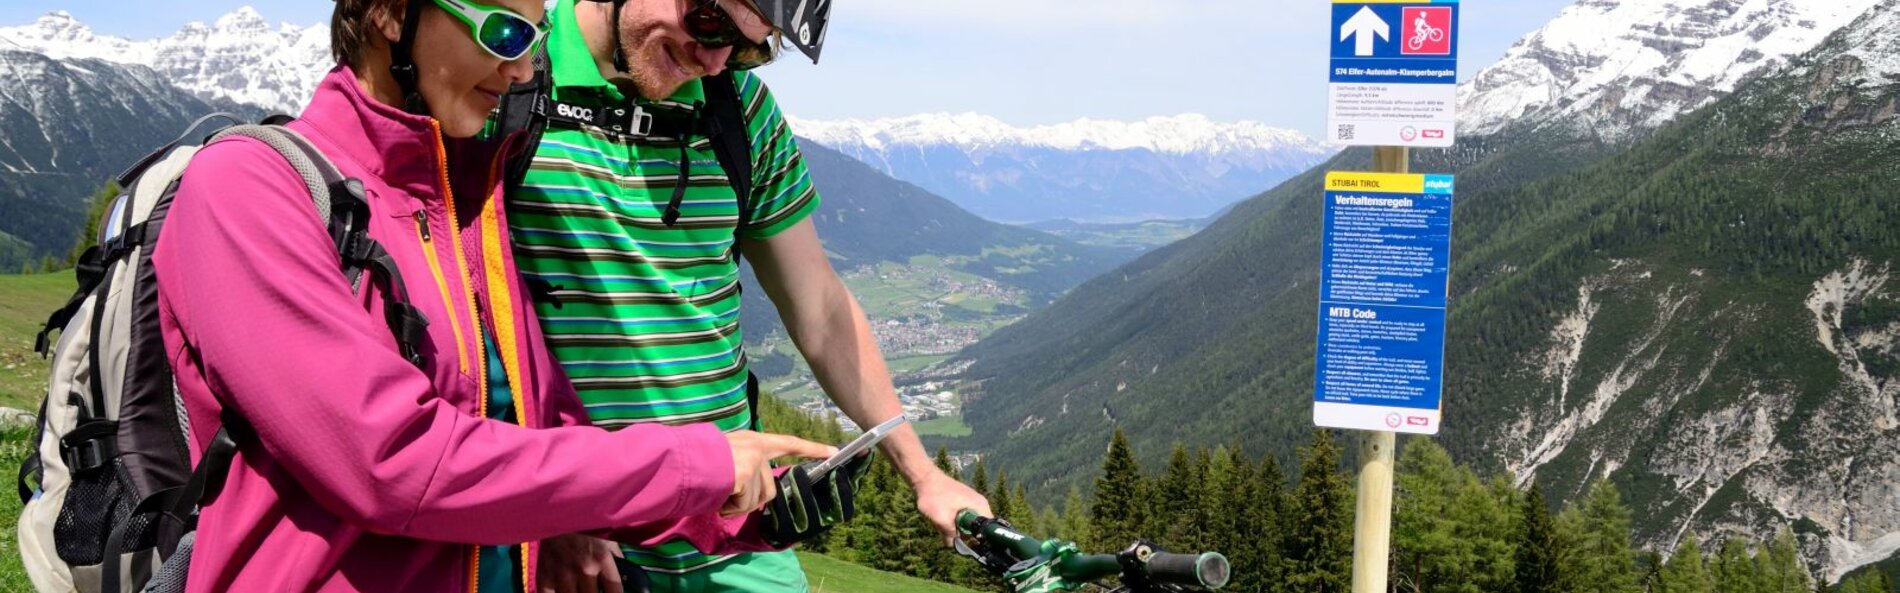 Zwei Mountainbiker versuchen sich zu orientieren und betrachten ihr Smartphone. Dabneben steht ein Mountainbikeroutenschild, ein blaues Schild mit den Verhaltenregeln und einem Richtungspfeil.